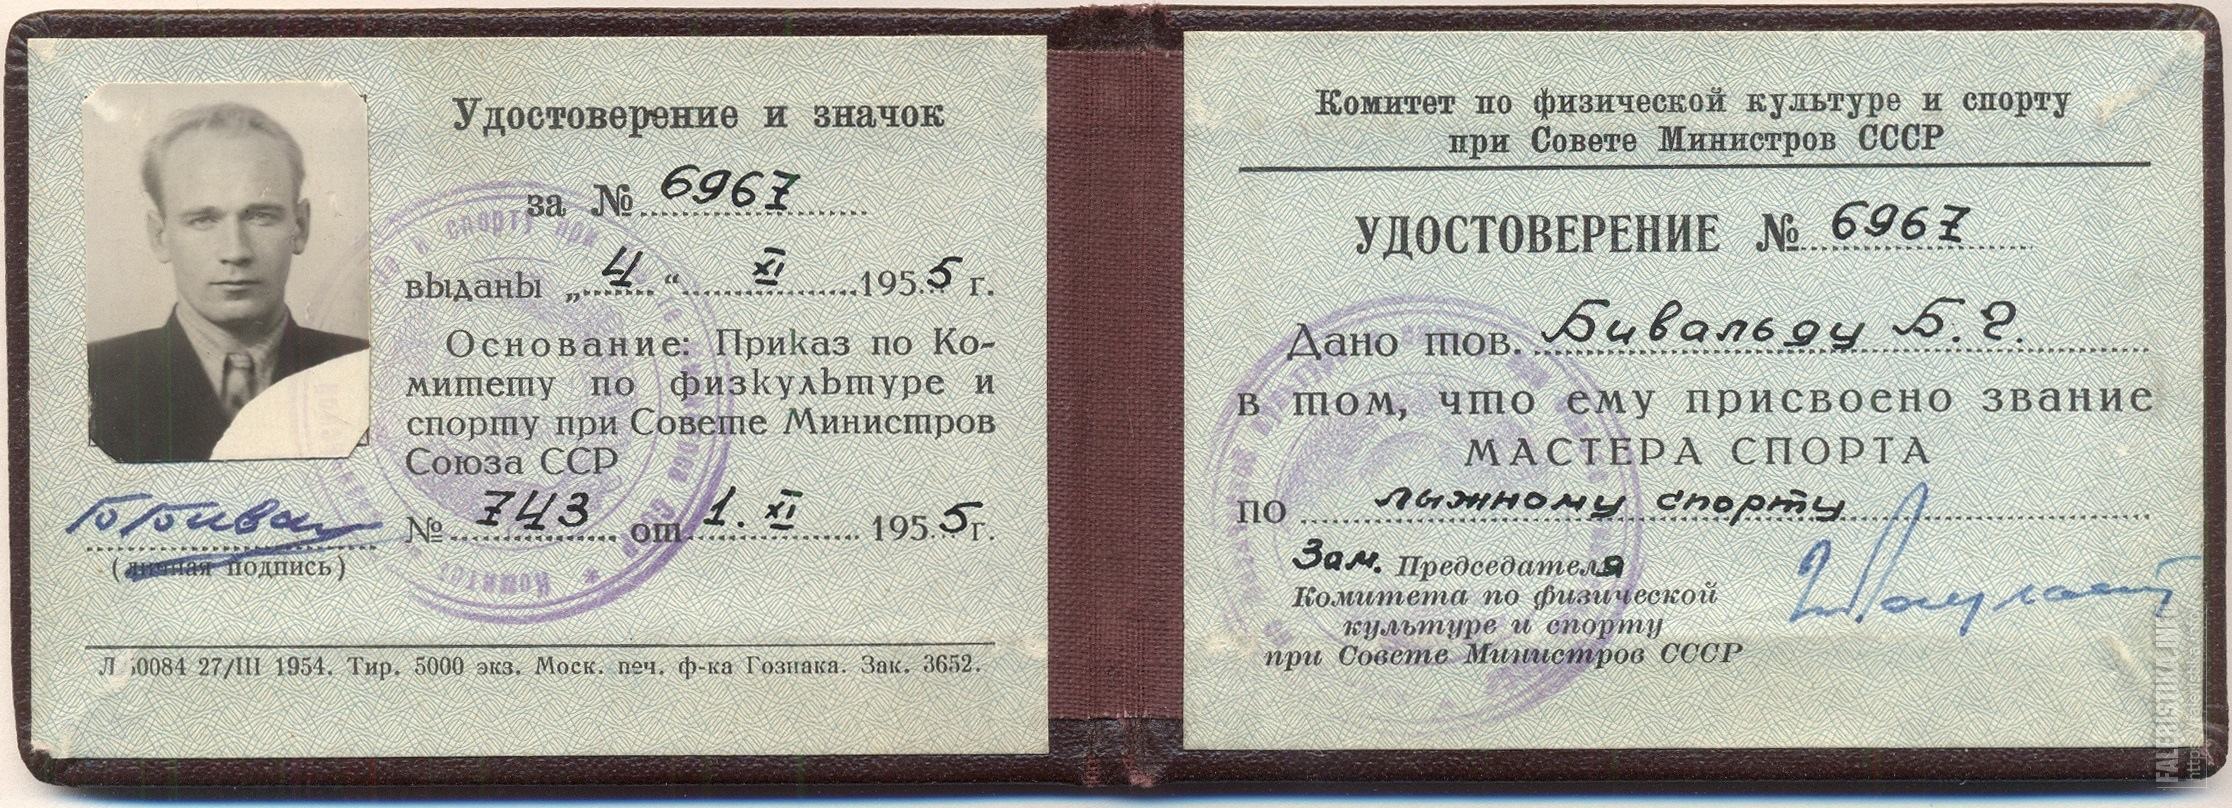 Удостоверение общественника физической культуры и спорта СССР